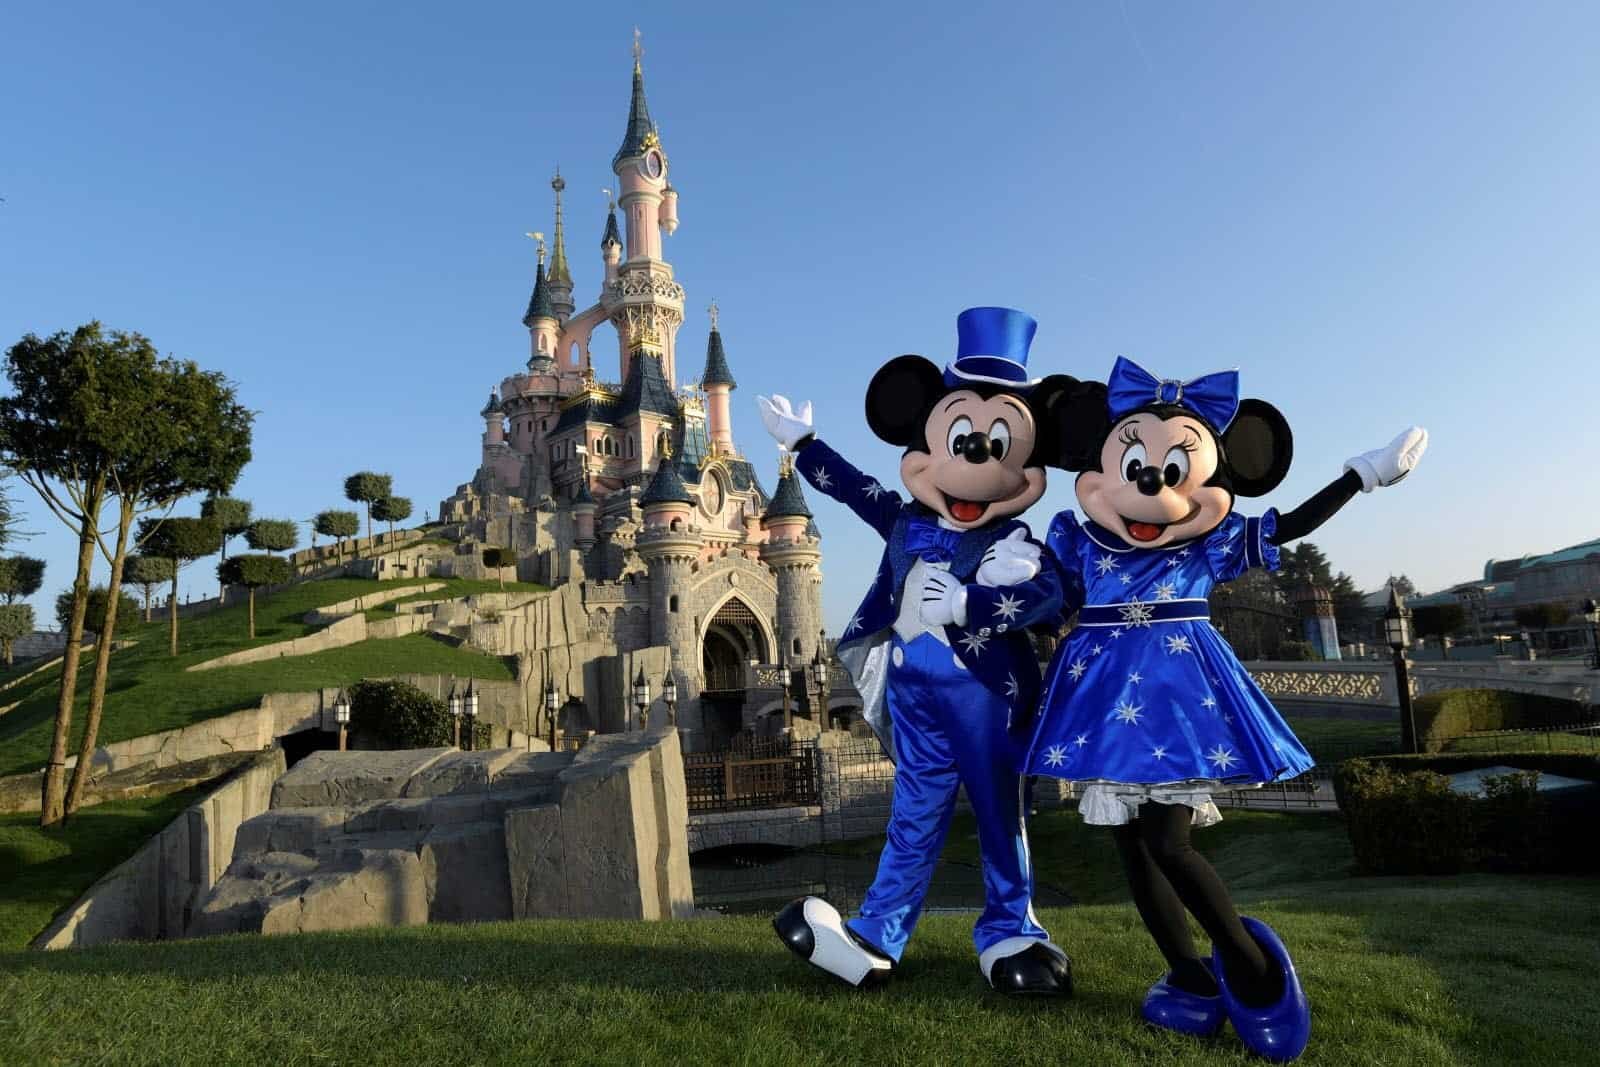 Mickey et Minnie Mouse en tenues bleues posant joyeusement devant le château de la Belle au bois dormant à Disneyland Paris par une journée ensoleillée.